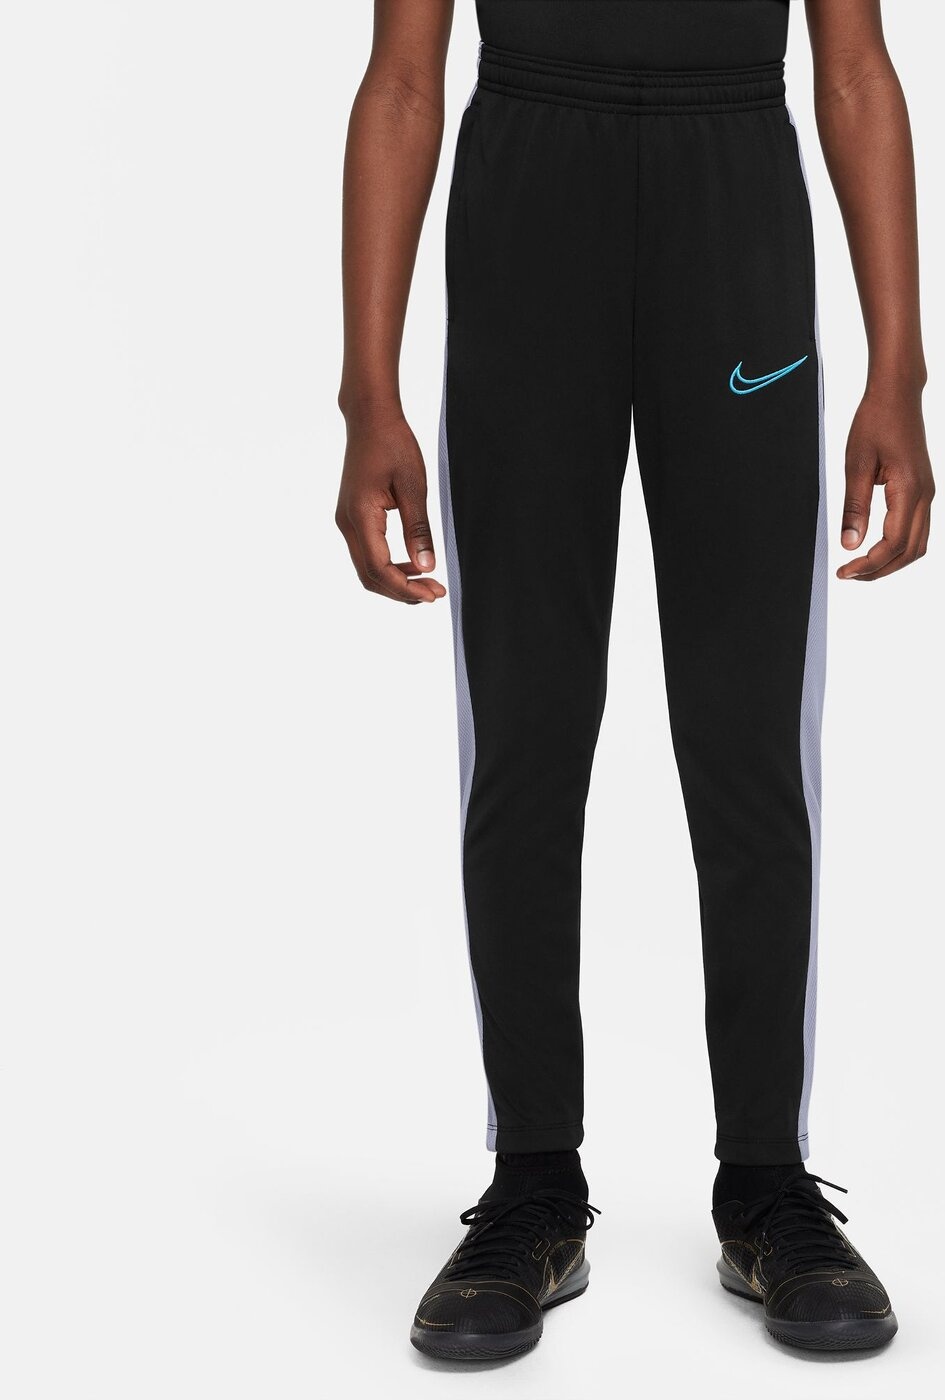 Nike Nike Dri-FIT Academy23 Fußballhose für ältere Kinder KPZ BR - schwarz/weiß - XL